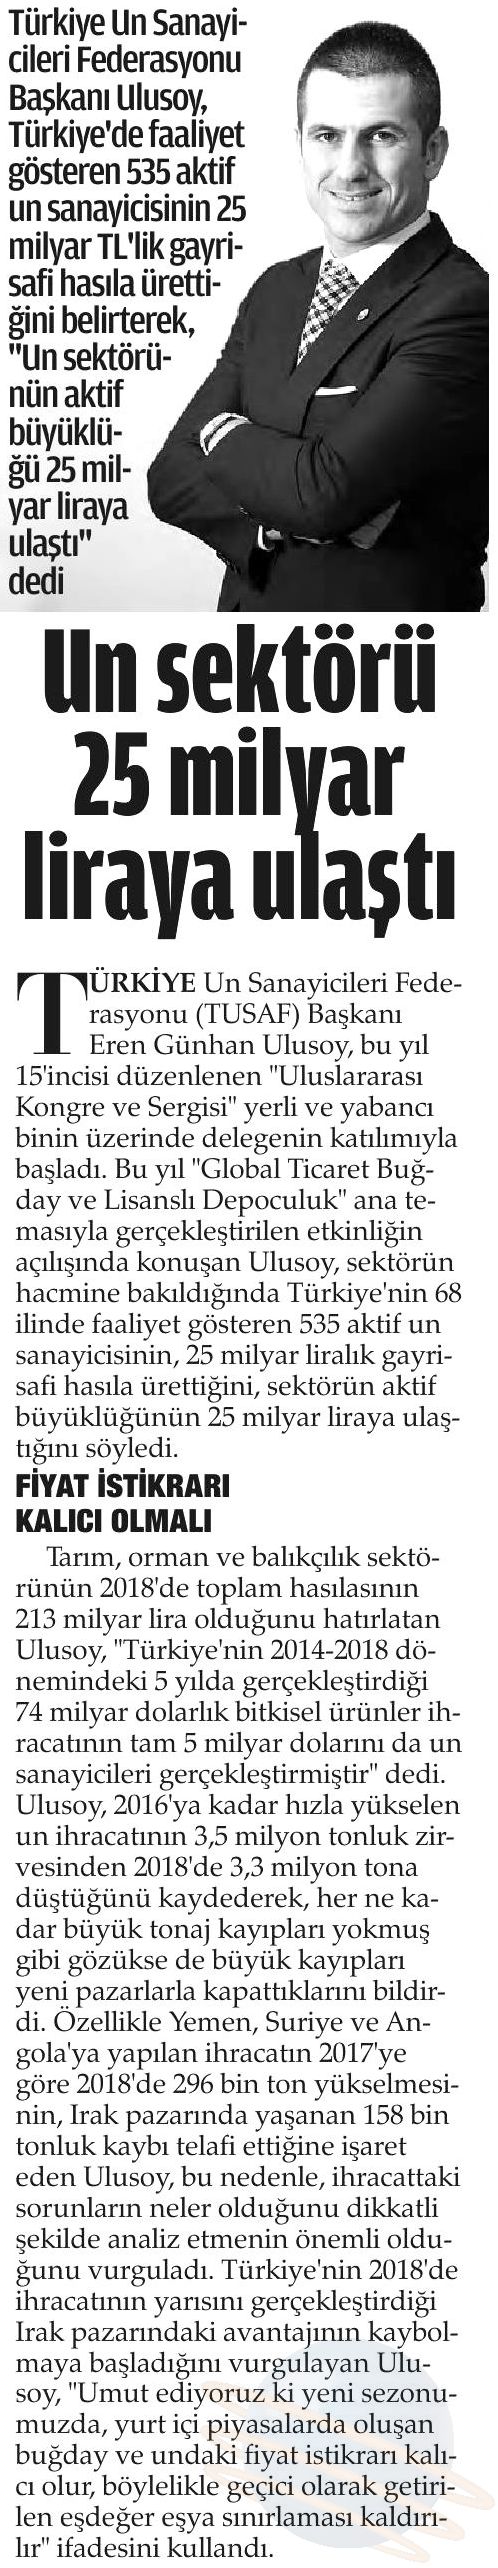 TUSAF Haber Gazetesi Samsun 27.04.2019.jpg